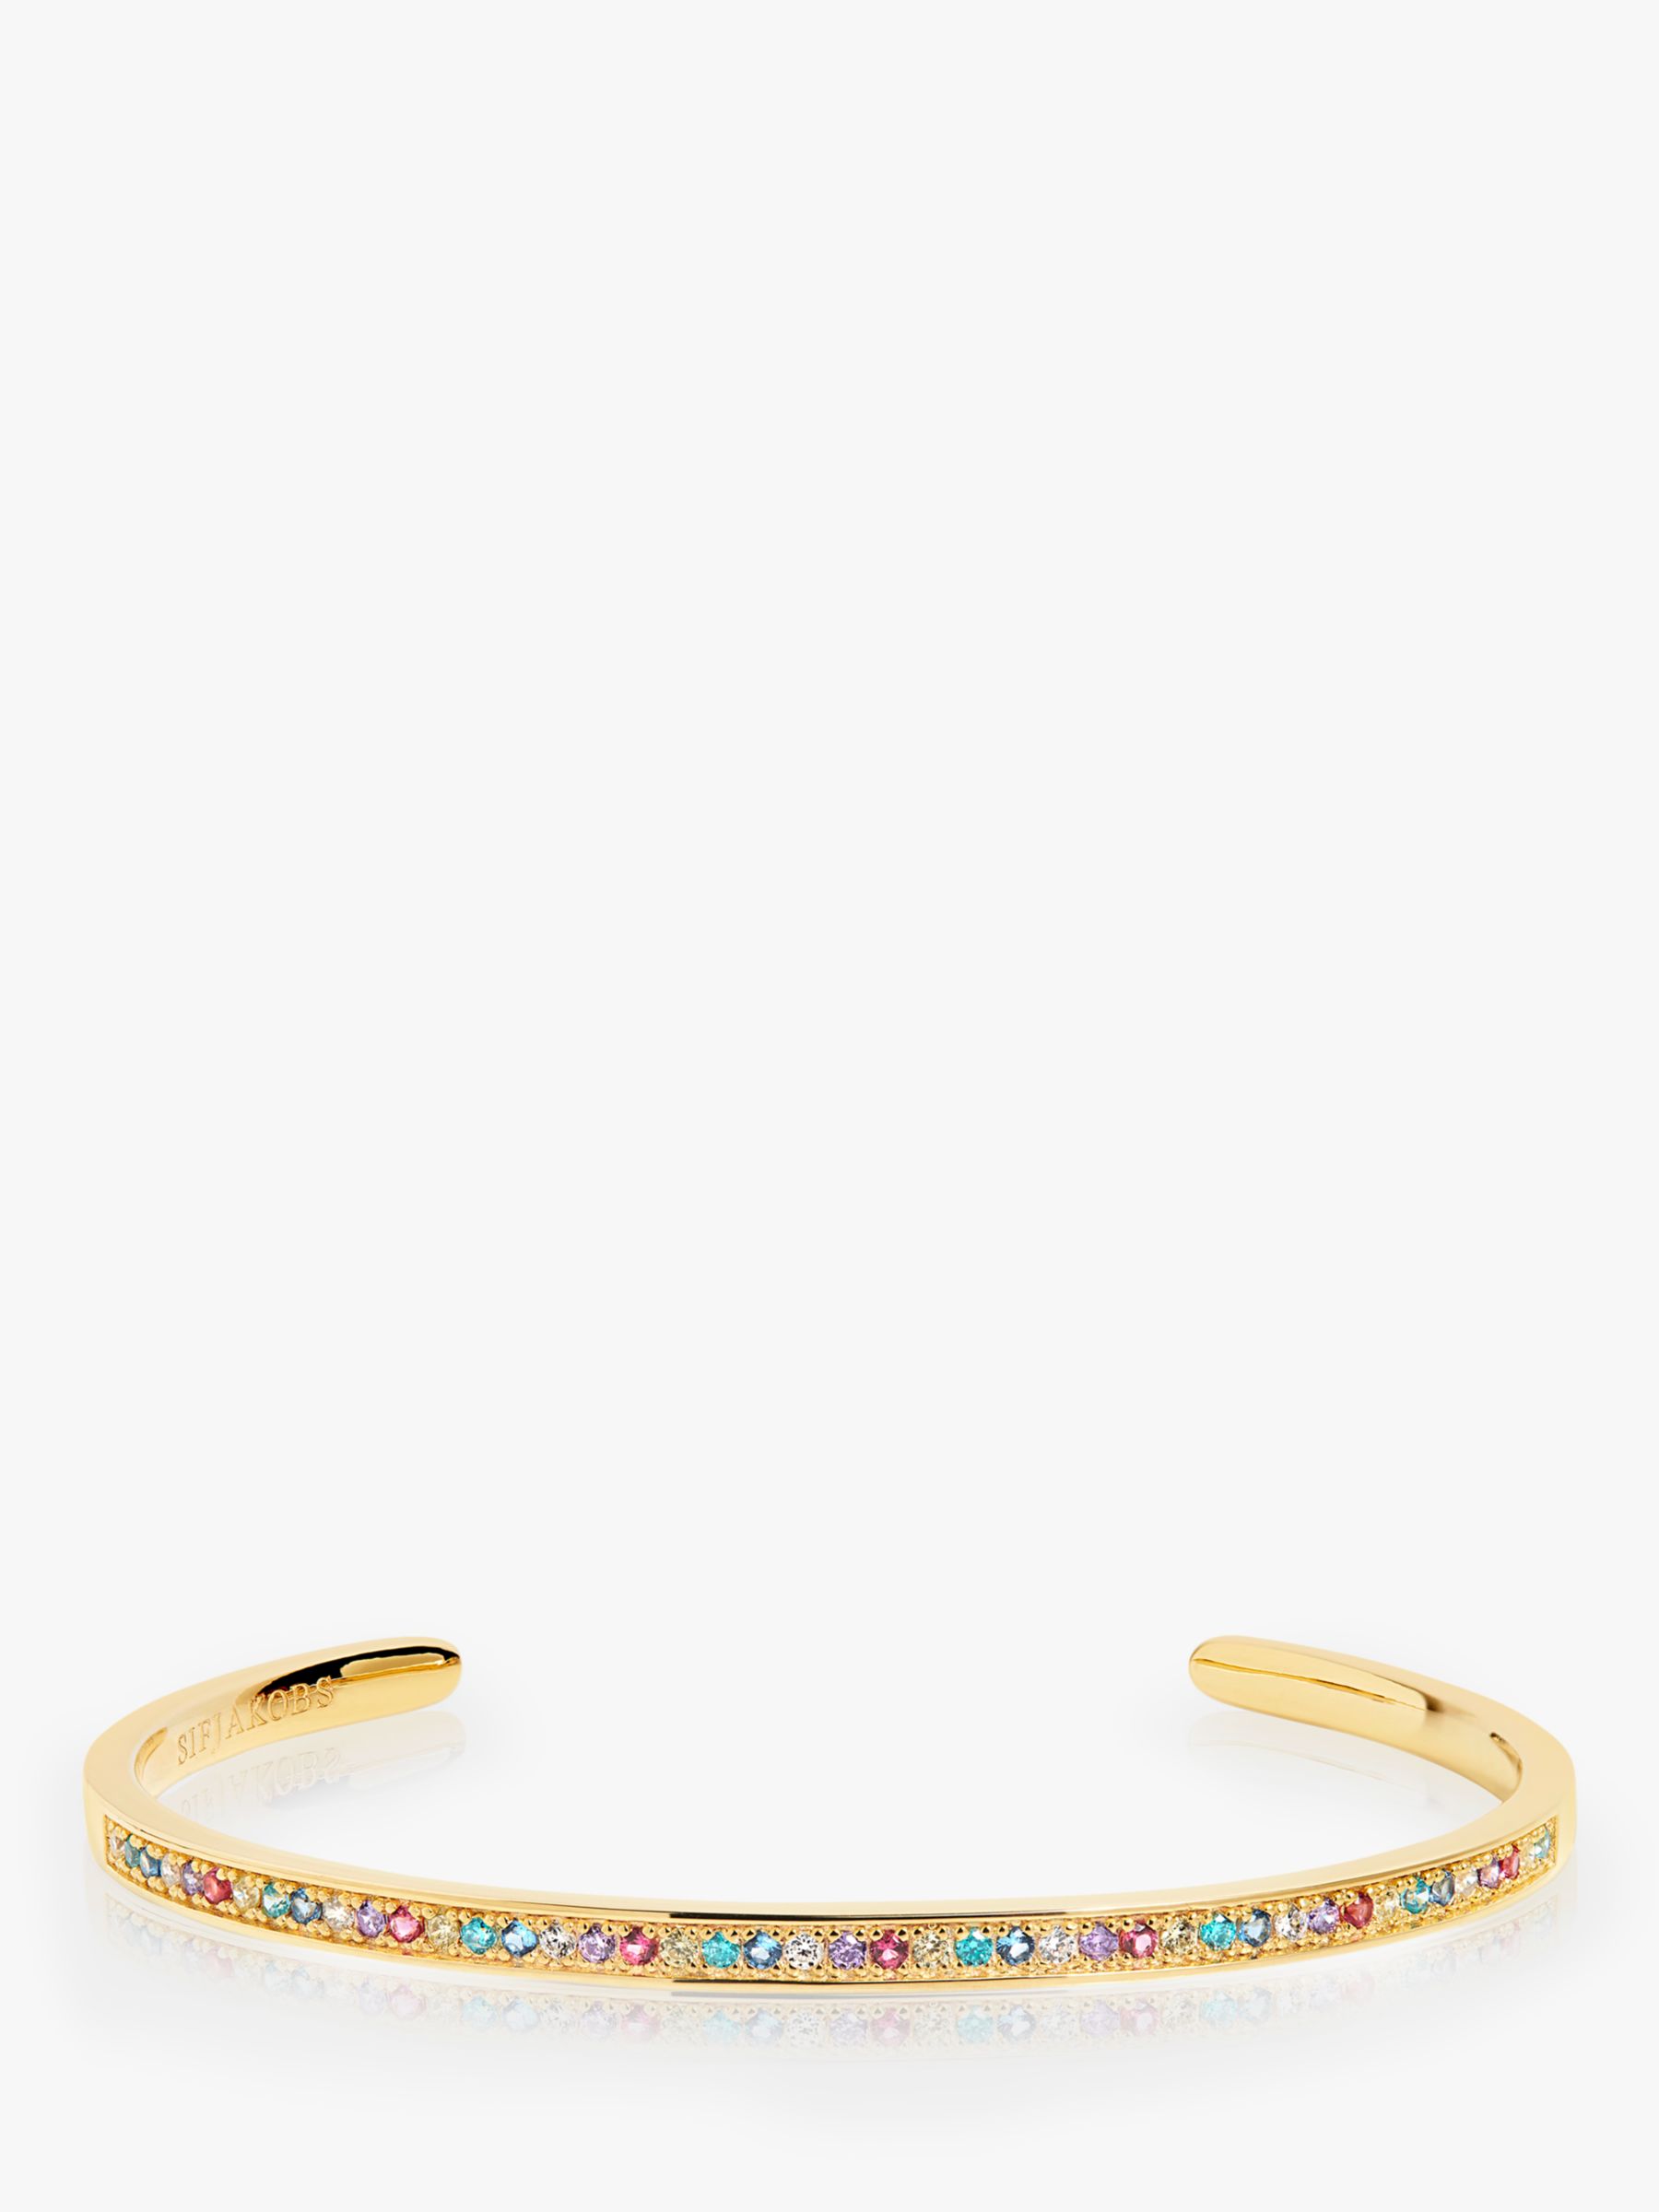 Sif Jakobs Jewellery Cubic Zirconia Tennis Bracelet, Gold/Multi